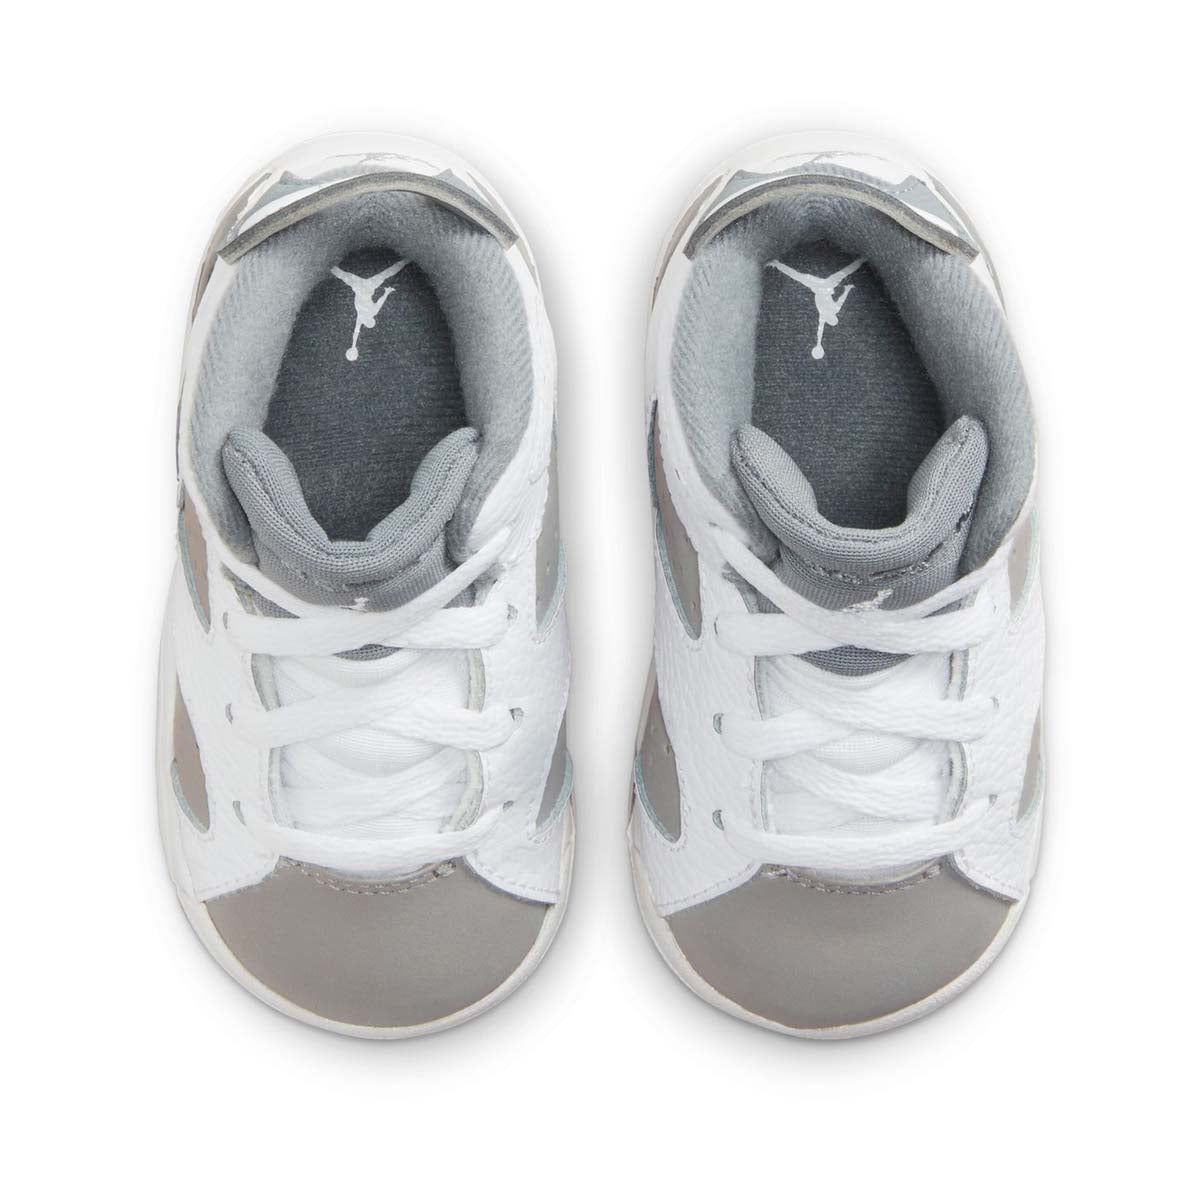 Jordan 6 Retro Baby/Toddler Shoes